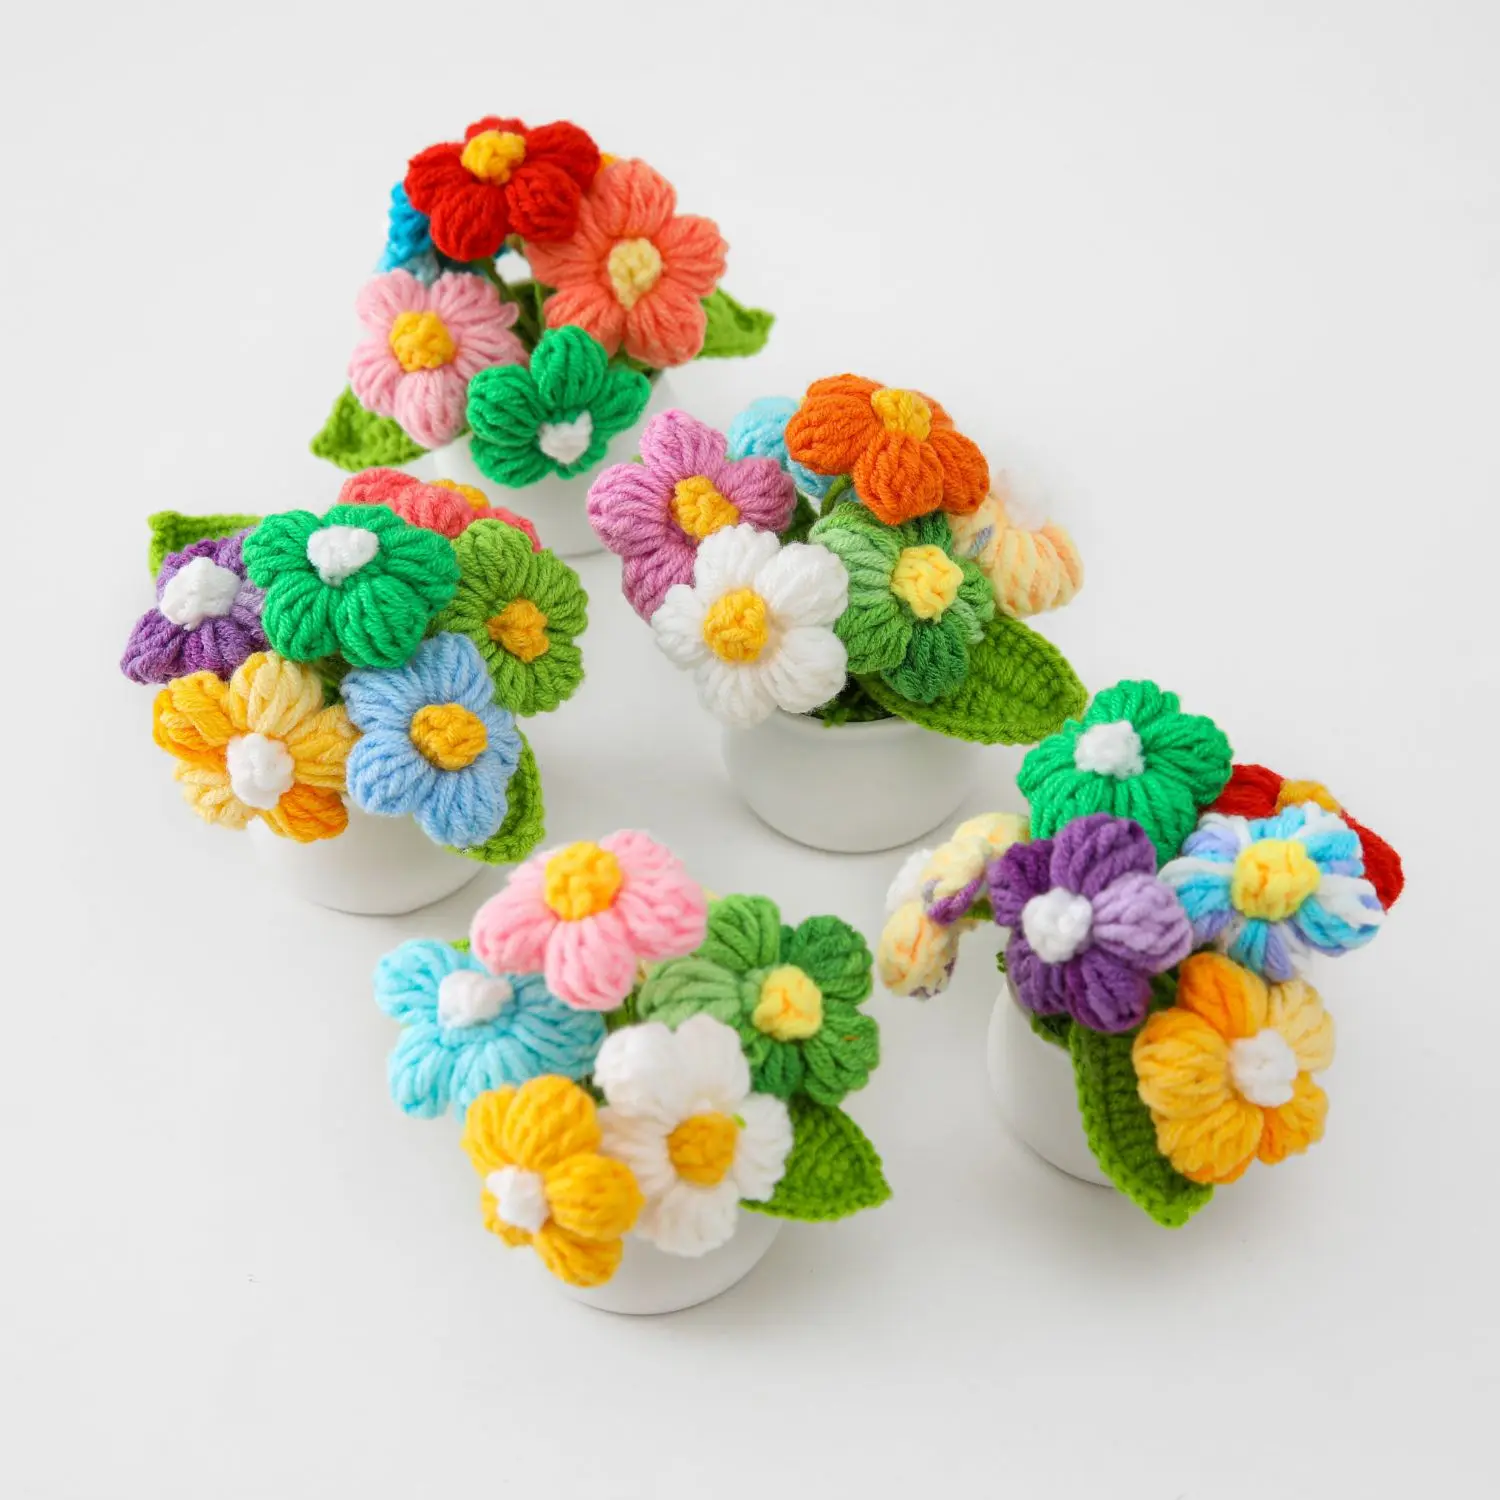 Fiore all'uncinetto finito Tuilp Daisy Rose fiore in vaso lavorato a maglia fatto a mano per la decorazione domestica donne bambini regalo per bambini all'ingrosso